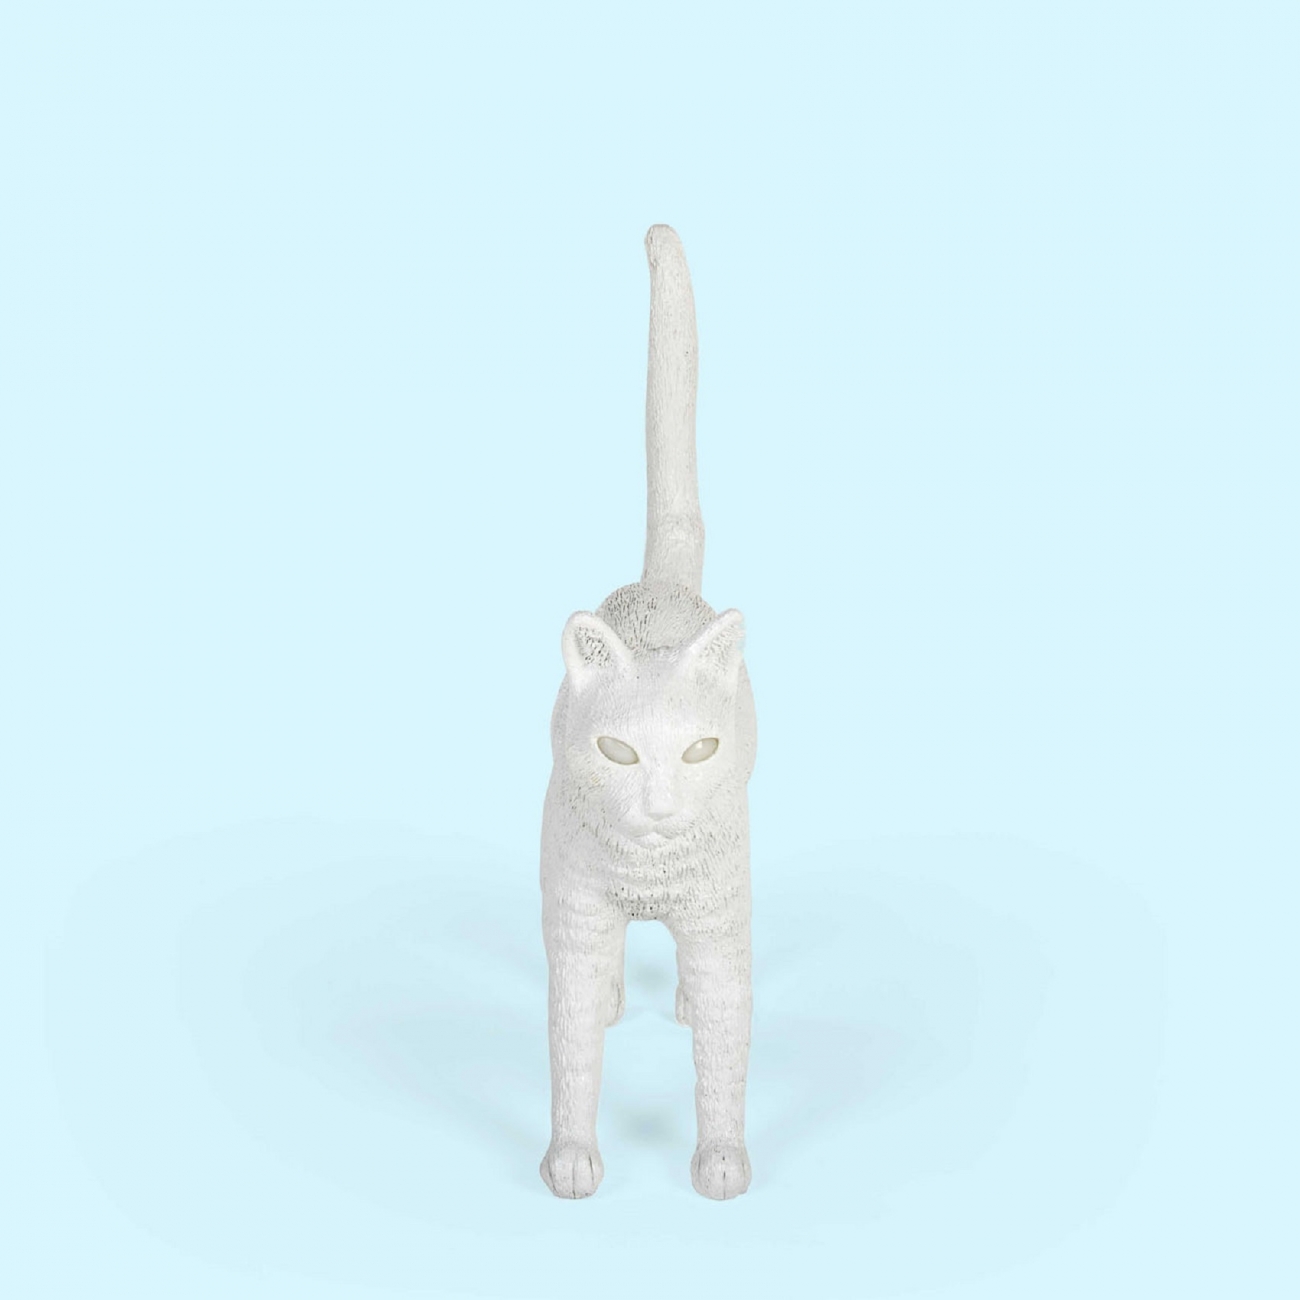 SELETTI JOBBY THE CAT WHITE LAMP